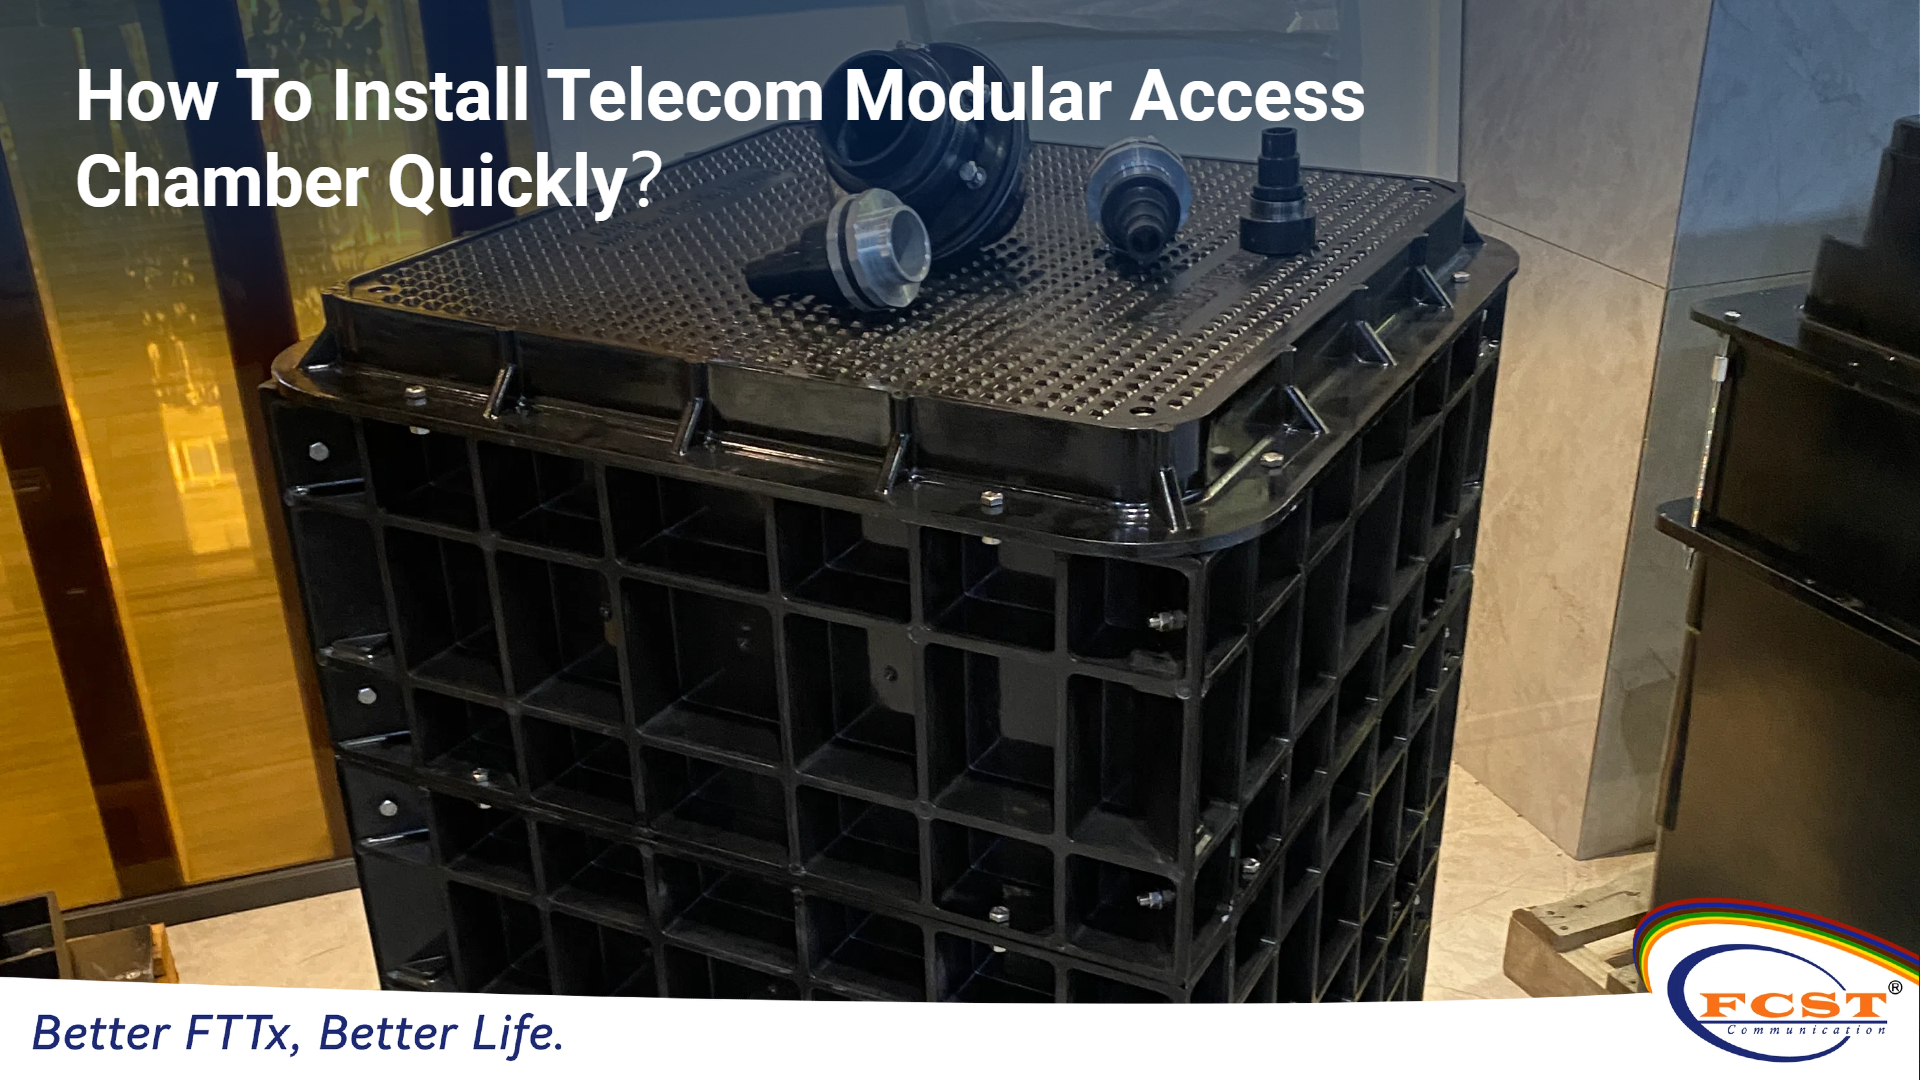 Como instalar rapidamente a câmara de acesso modular de telecomunicações？